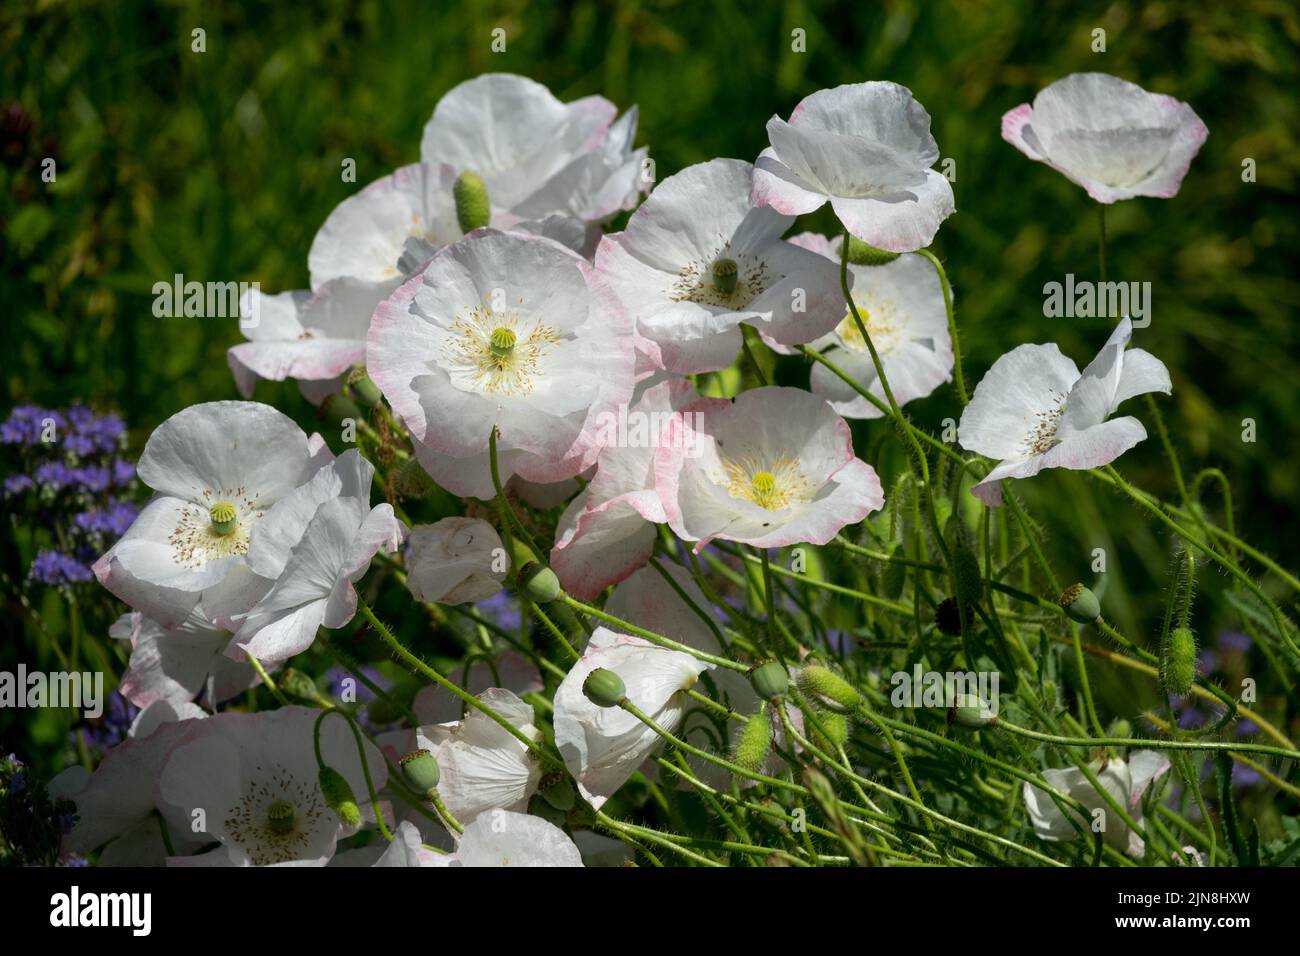 Papaveri bianchi papaveri bianchi papaveri papaveri bianchi papaveri color rosa pallido delicati e fragili fiori papaveri da giardino, noti anche come annuari di "seta nuziale" Foto Stock